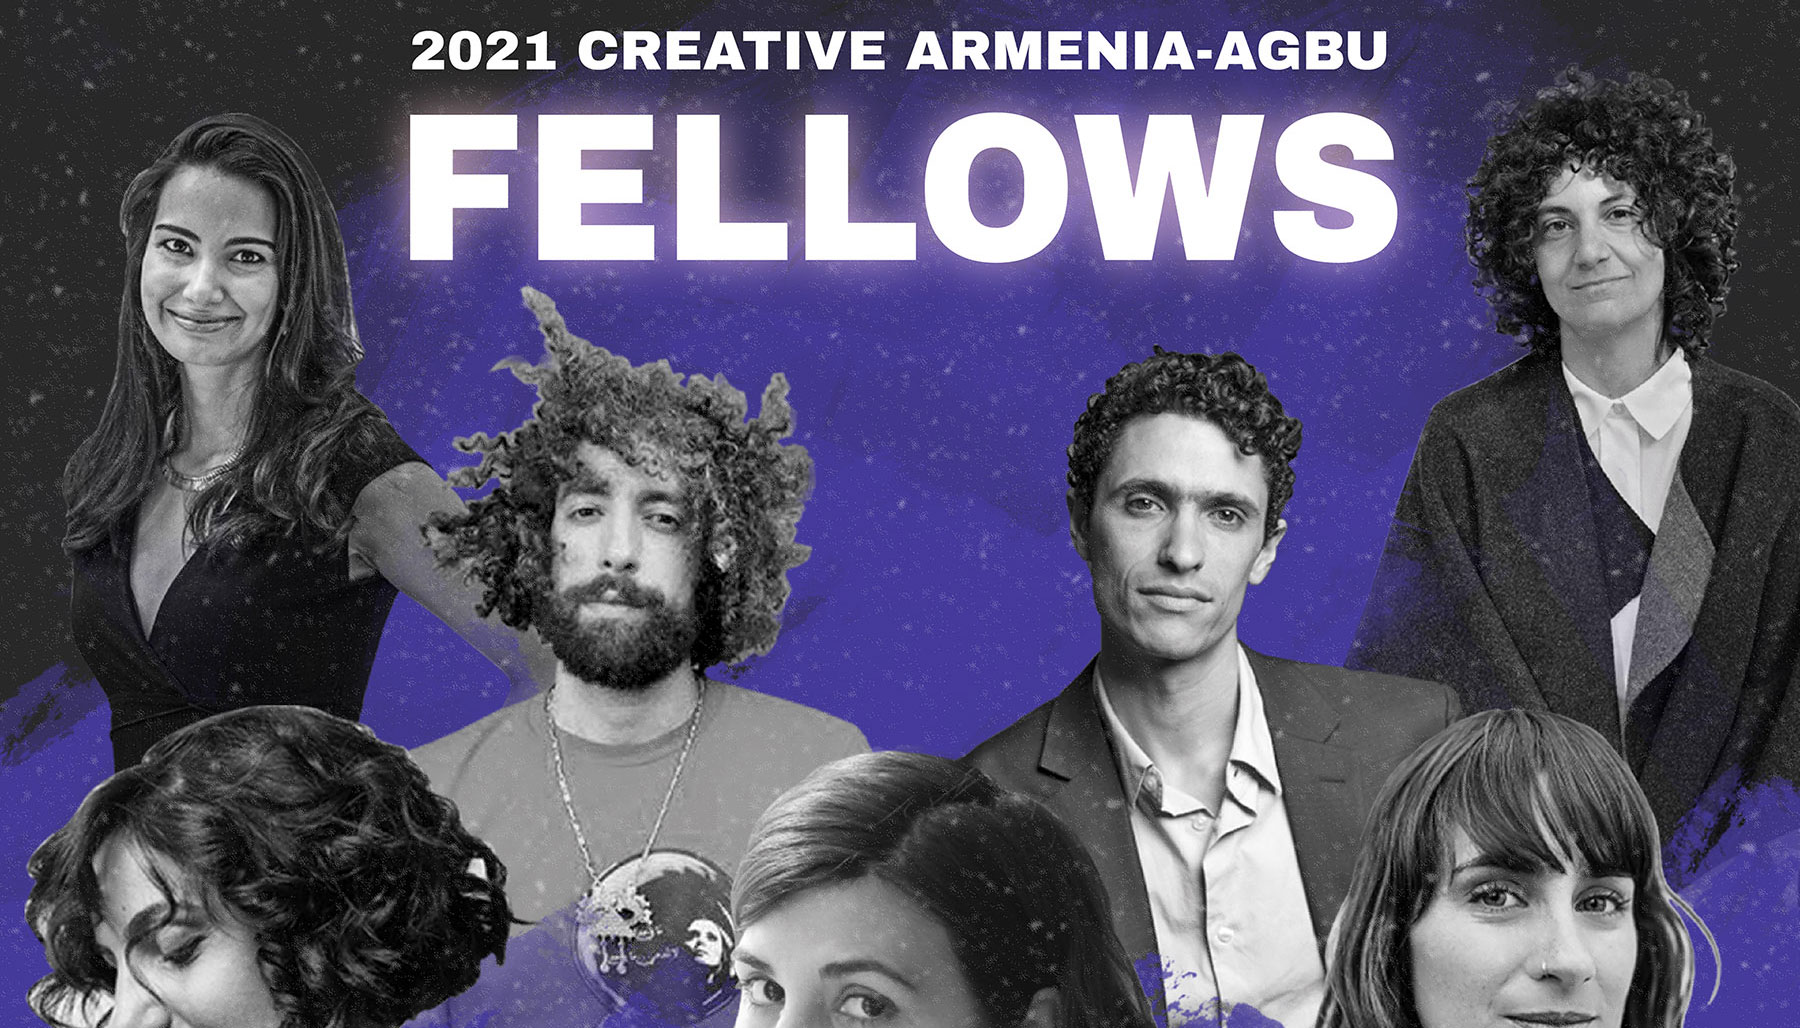 Creative Armenia and AGBU announce 2021 Fellows